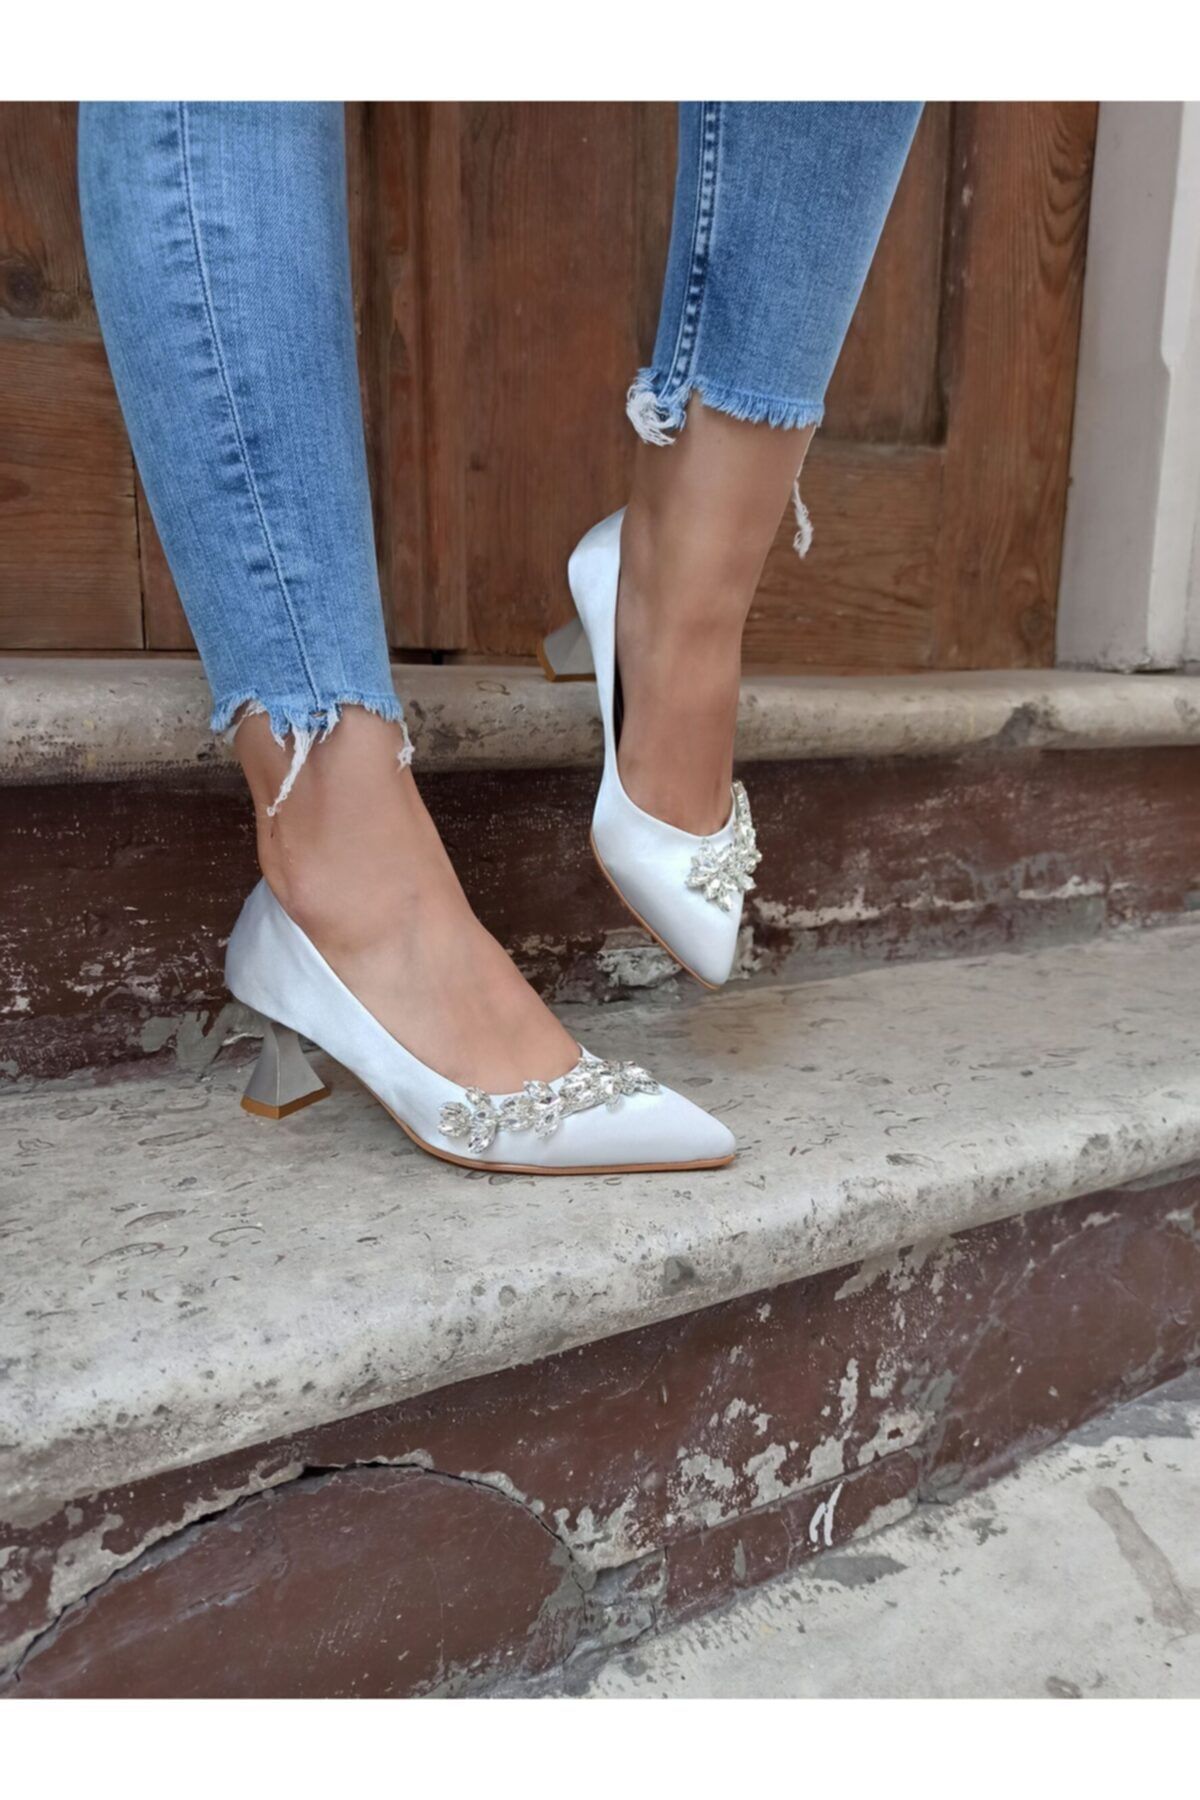 Atelierby DS Kadın Gümüş Saten 5 Cm Yaprak Taşlı Topuklu Ayakkabı